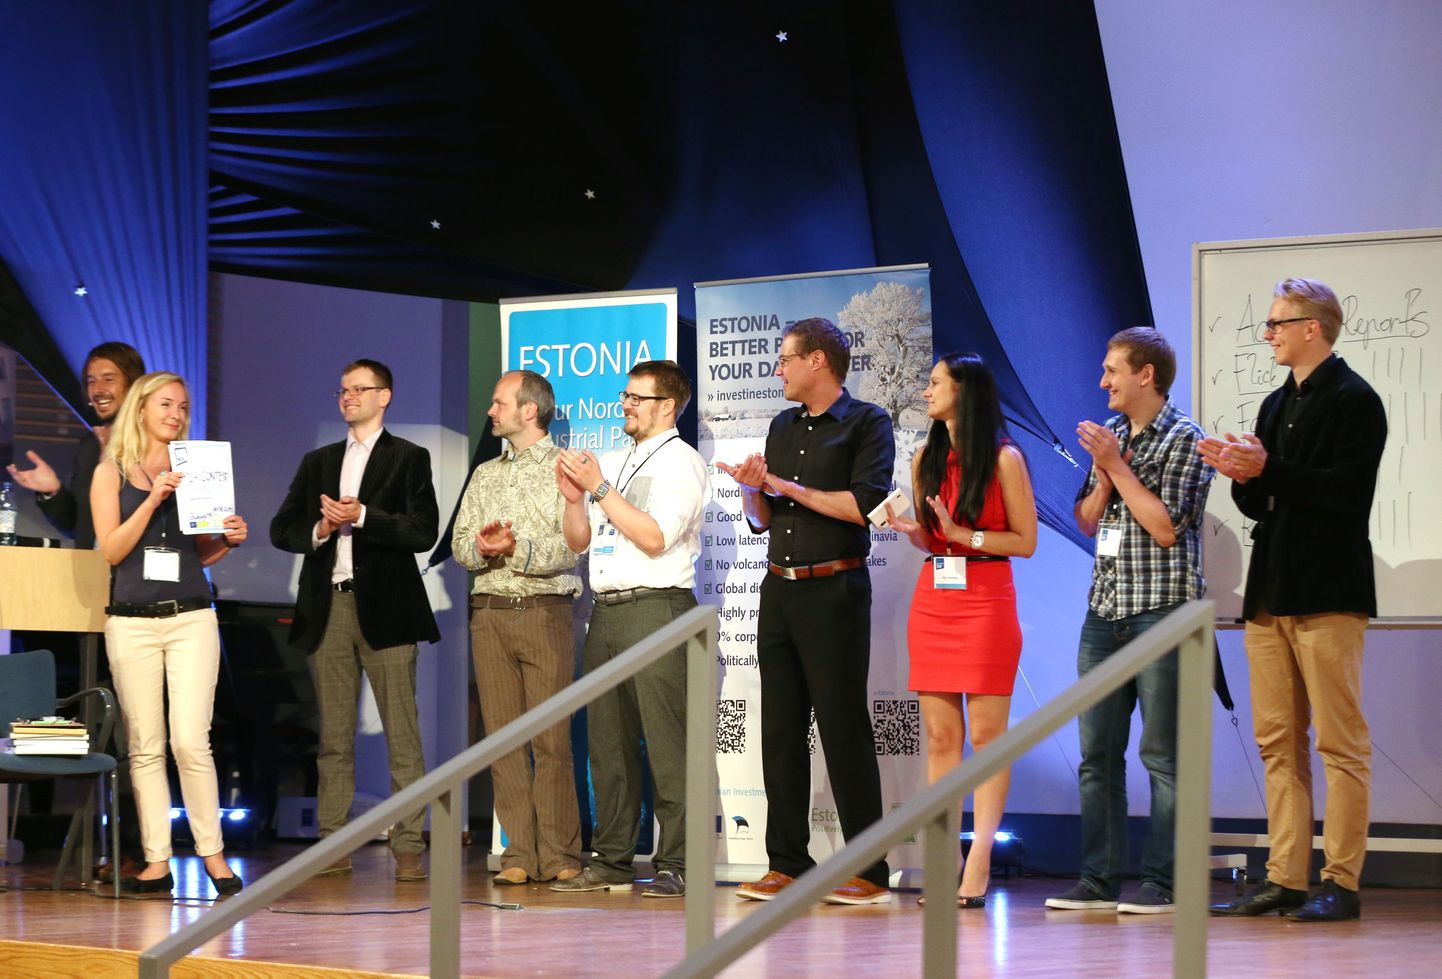 Tallinna Tehnikaülikoolis toimus European Innovation Adademy lõppüritusena konkurss LATITUDE 59. Võistluse 5 finalisti seast valiti parimaks Fabulonia, teise koha sai Flick Diet.